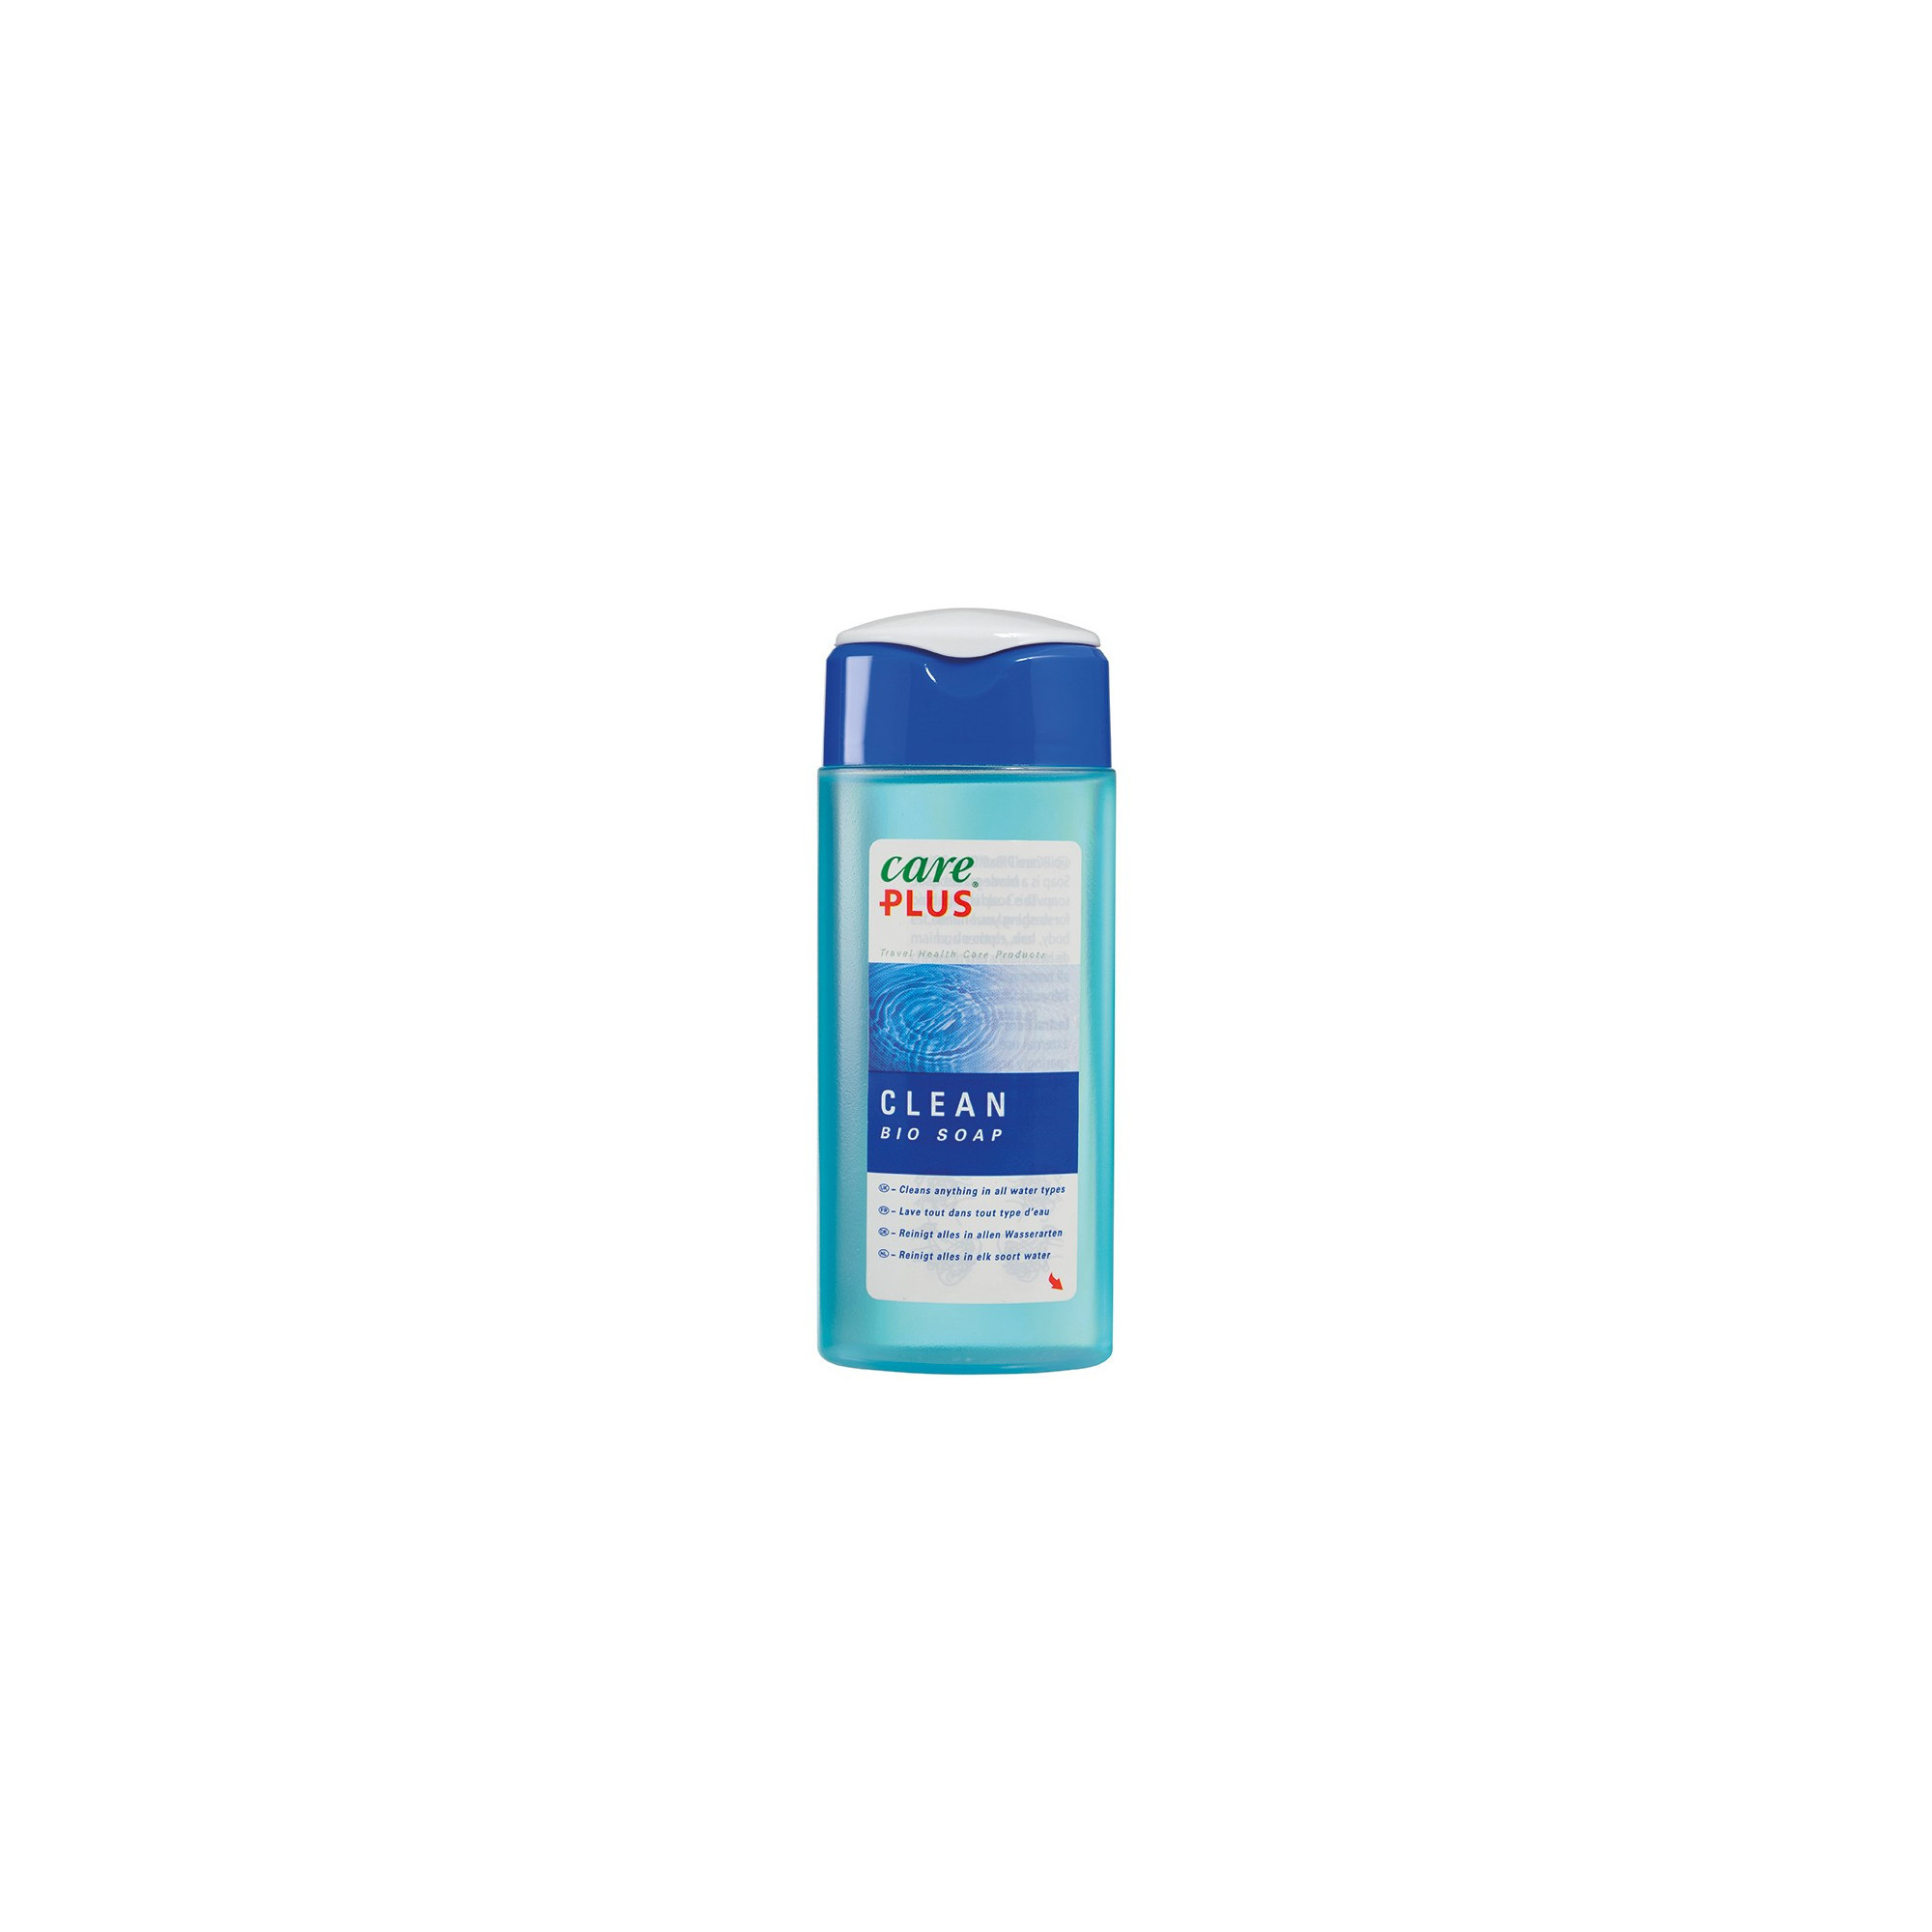 Savon Clean Bio Soap